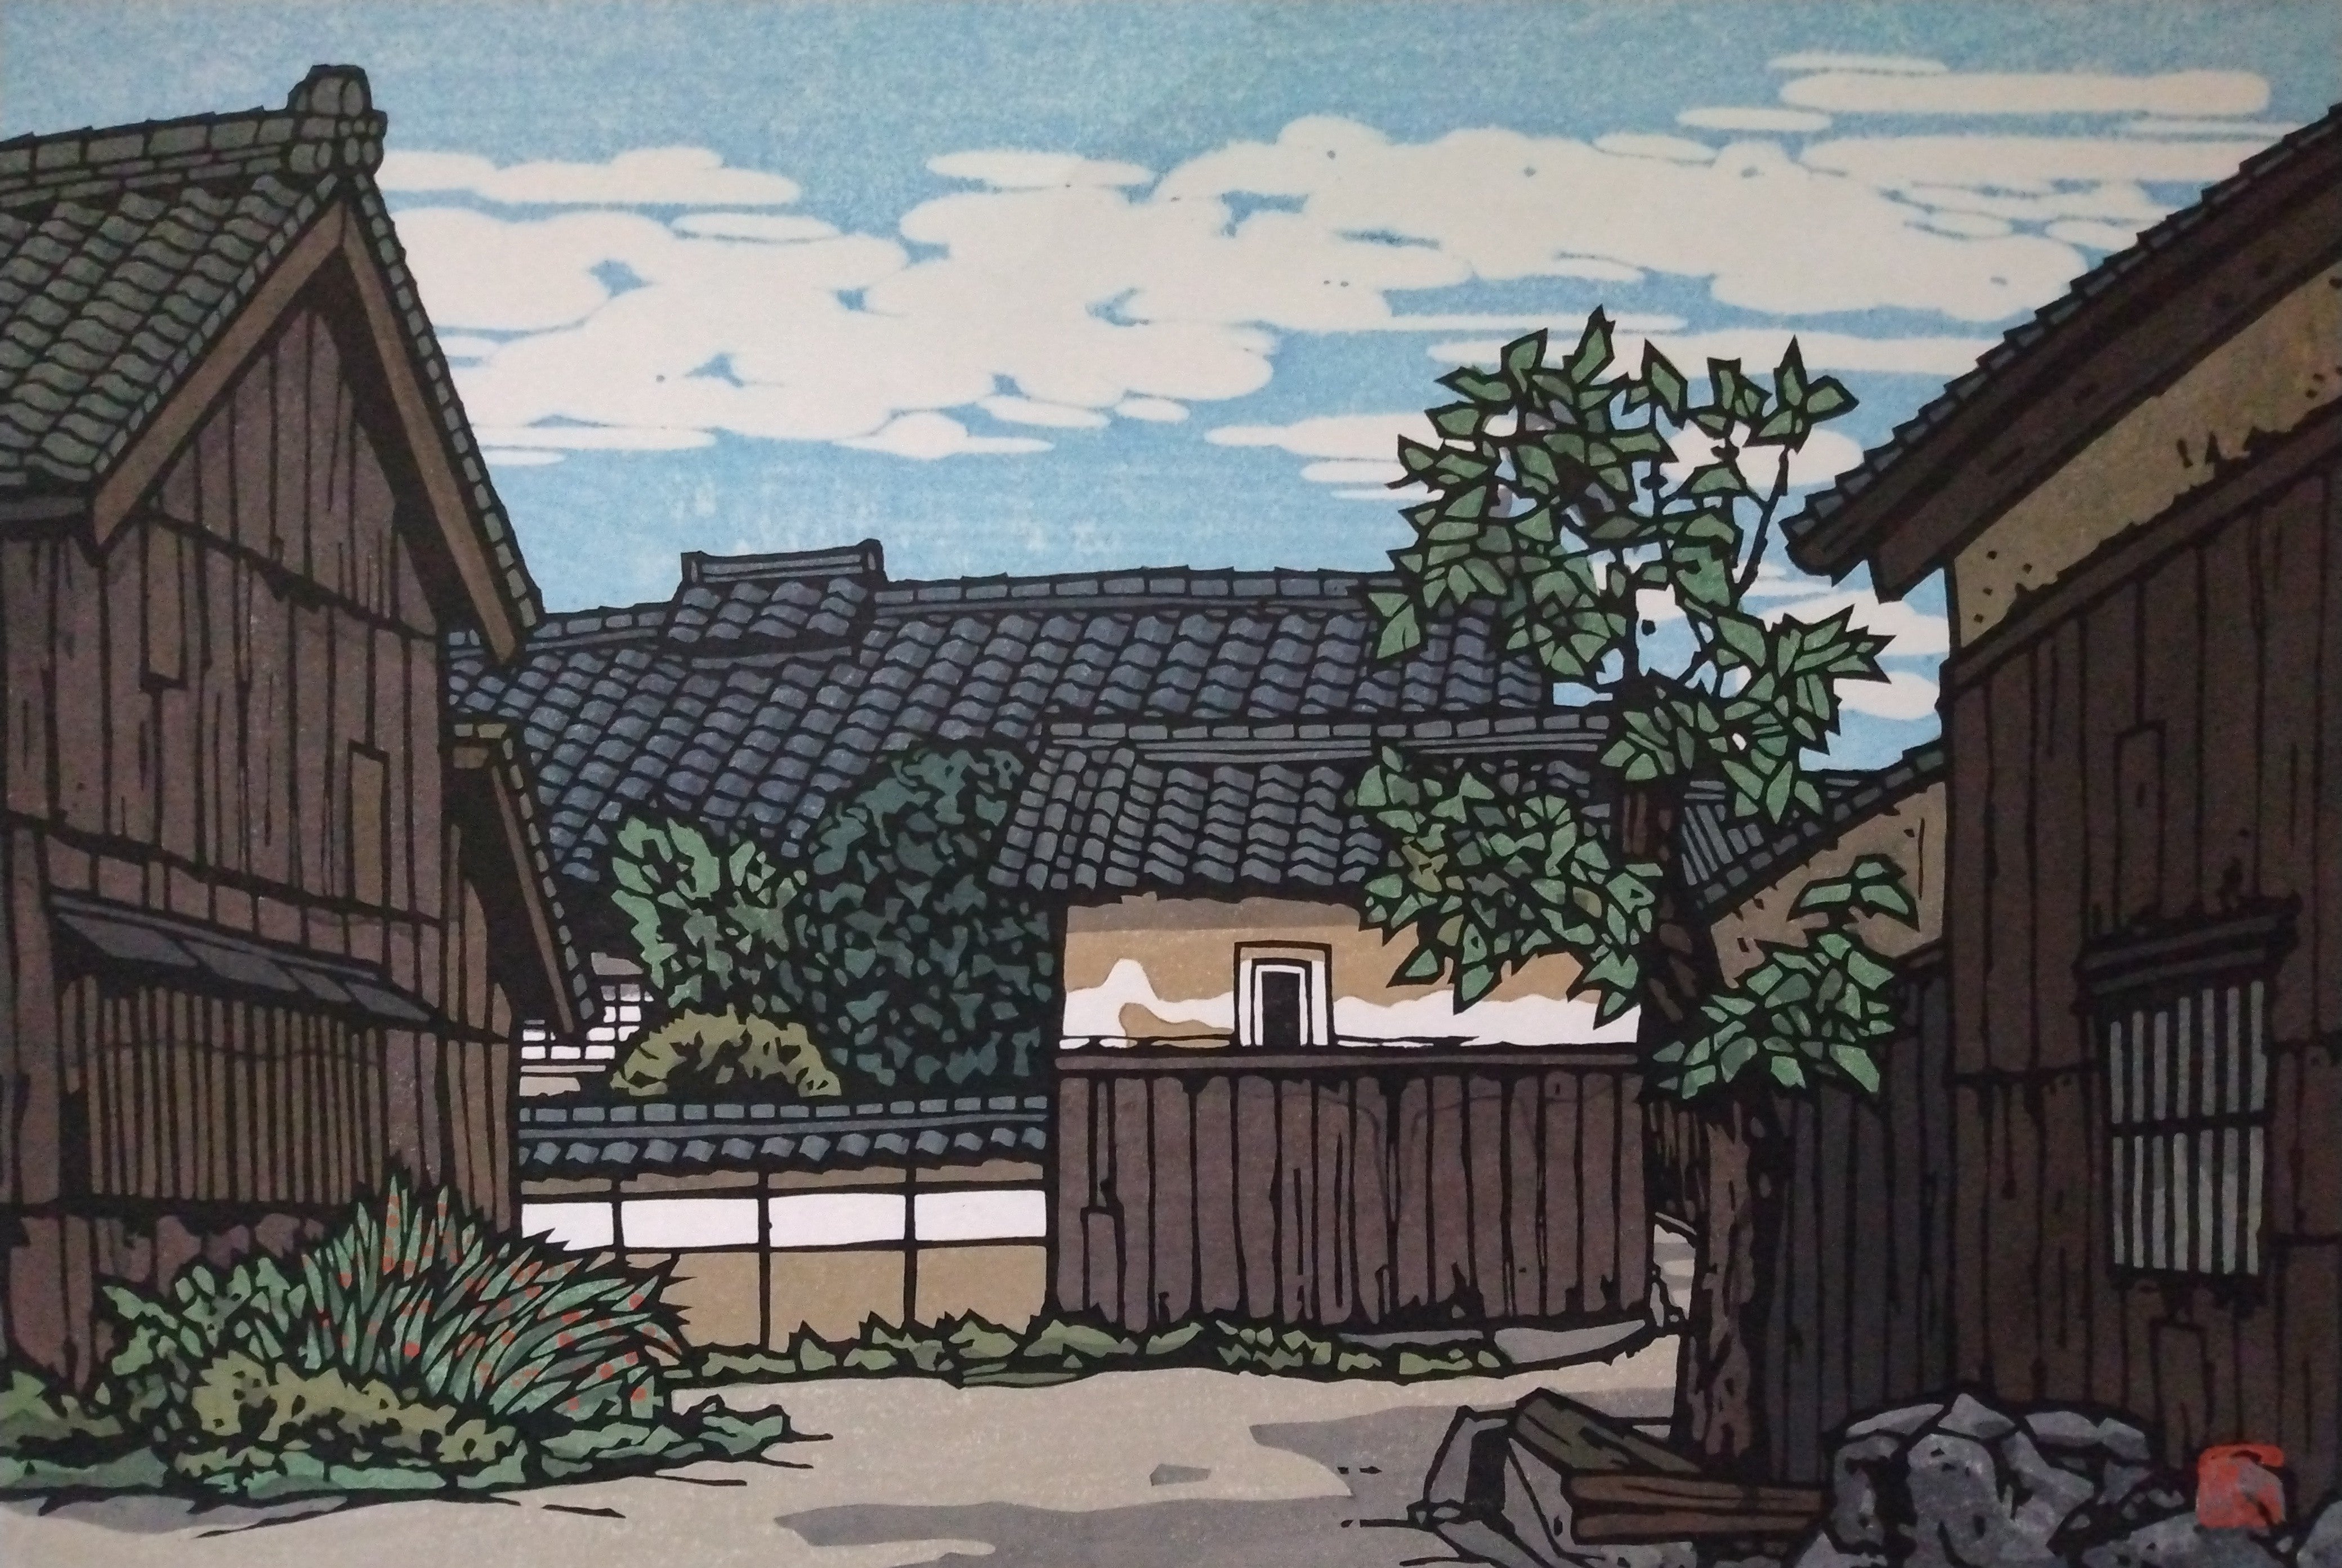 Woodblock Print by Katsuyuki Nishijima, "Aburahi in Spring" (Aburahi no Haru)